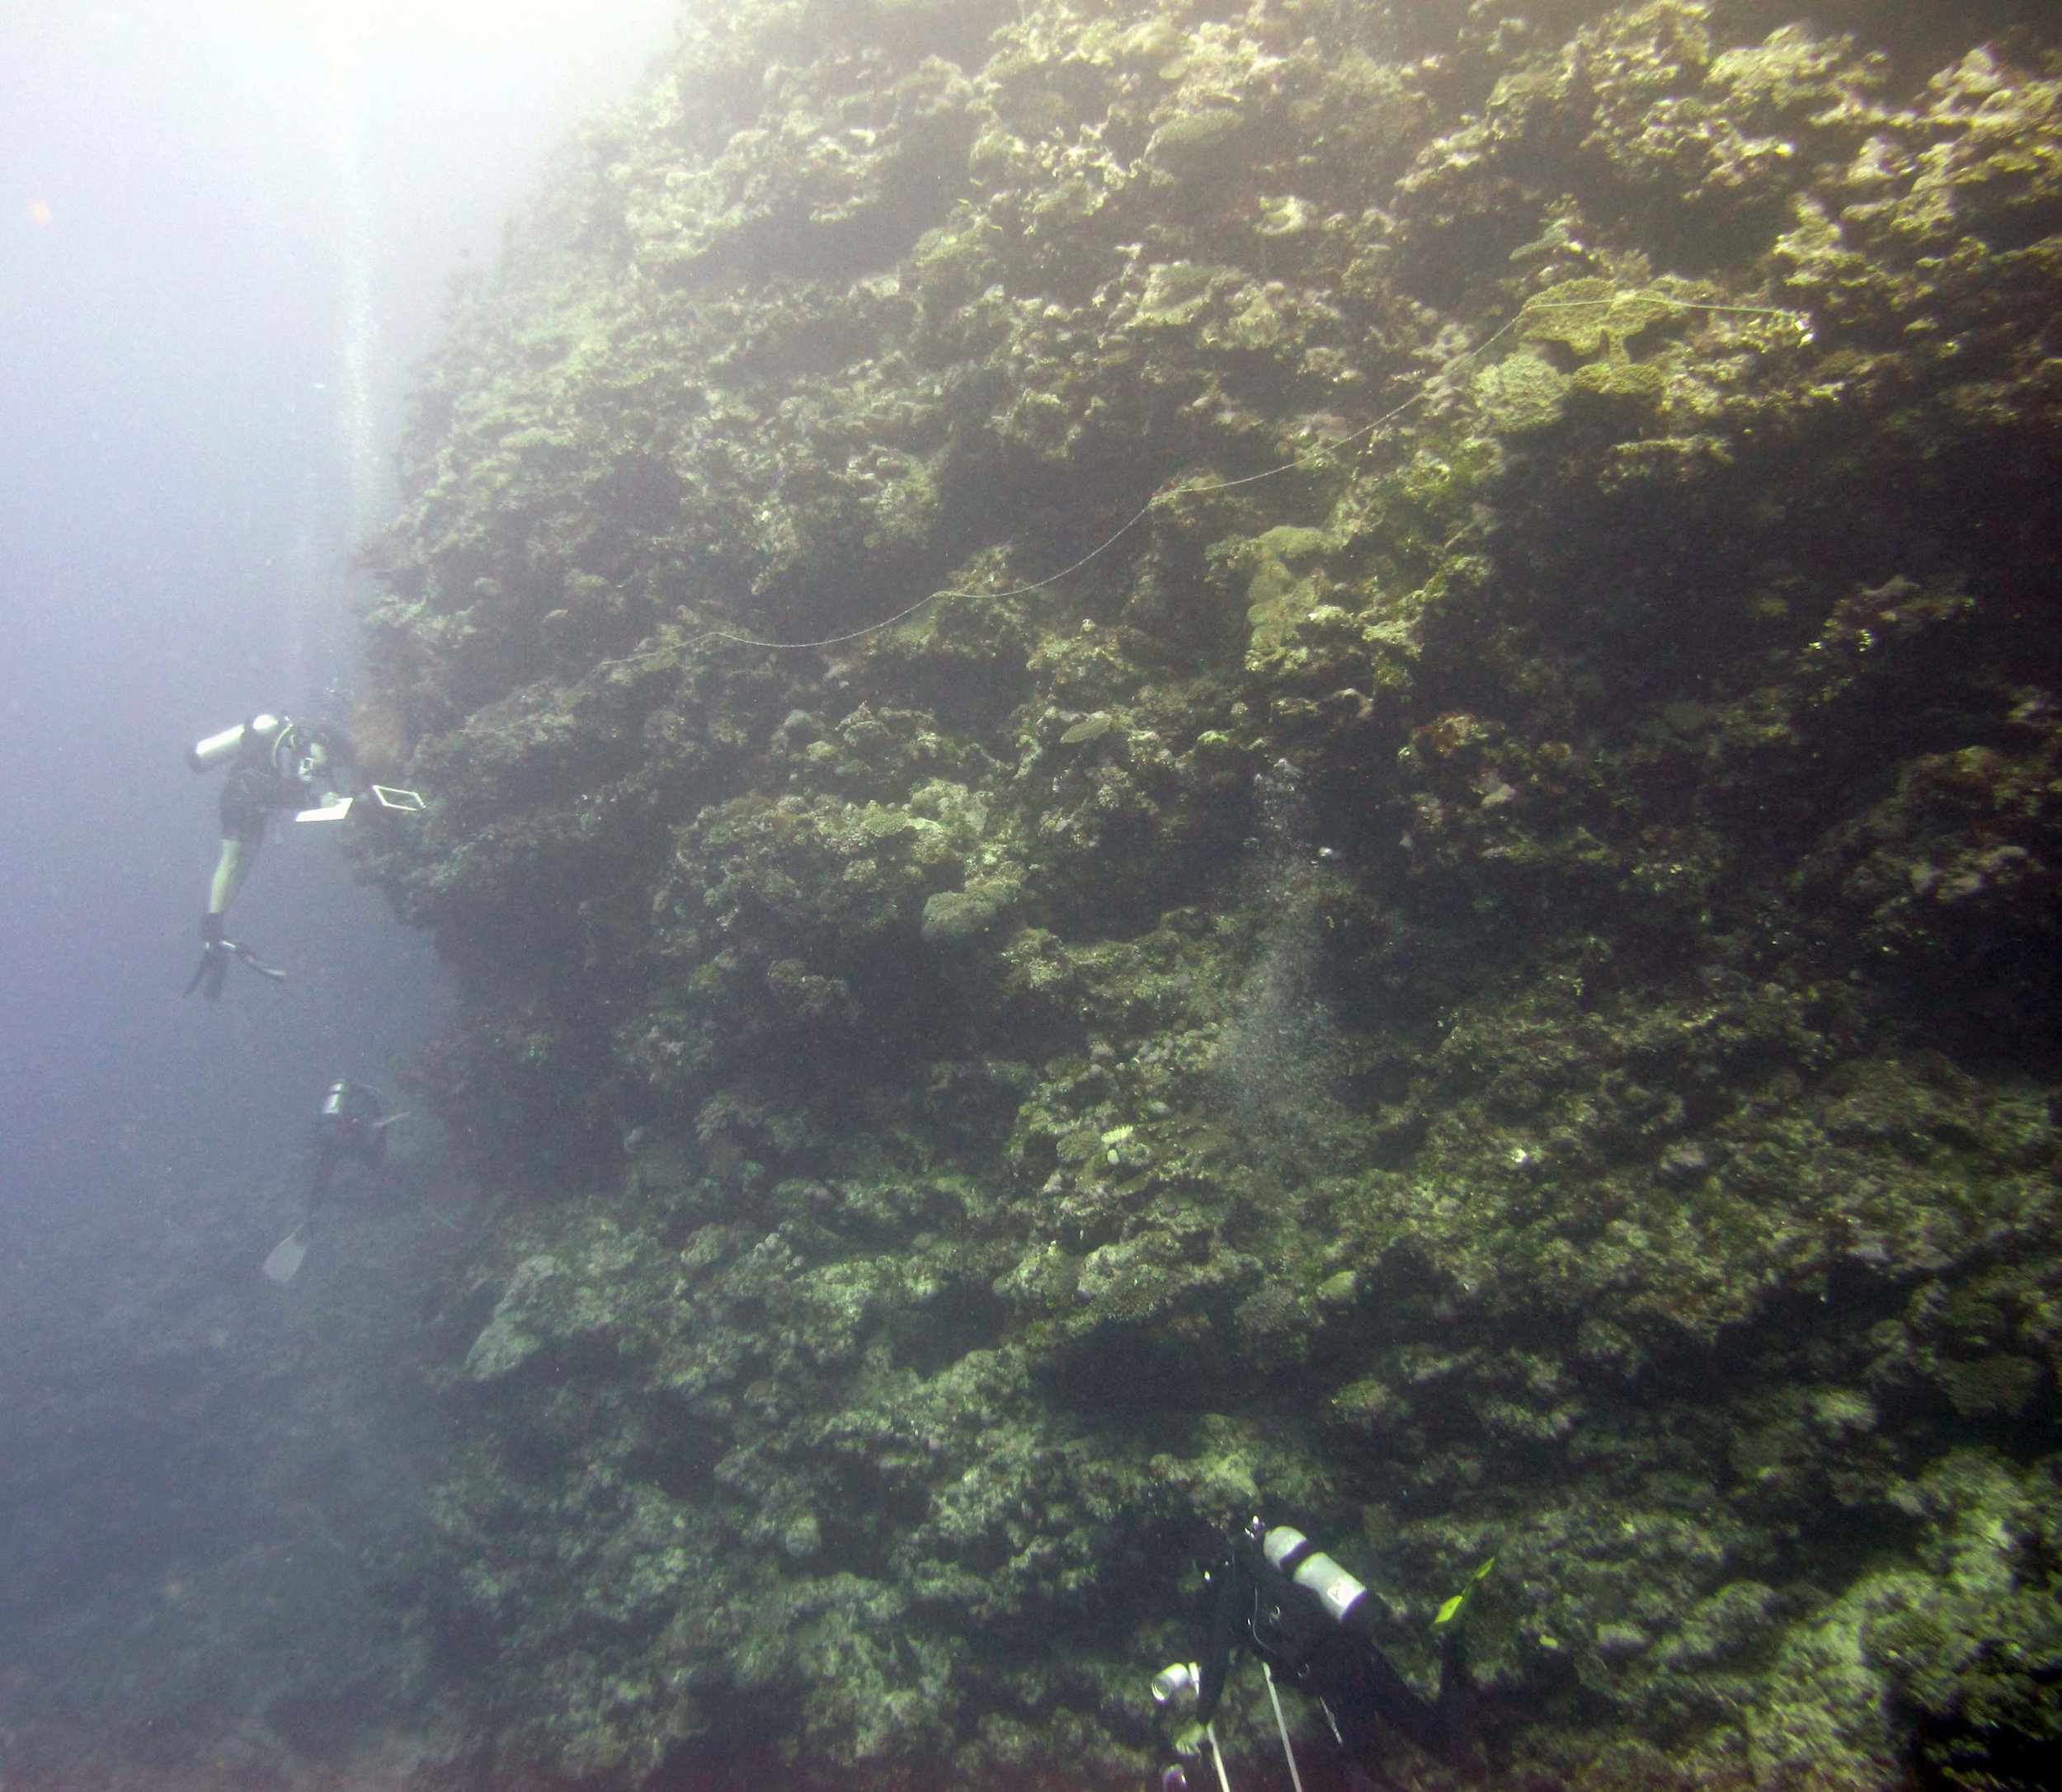 divers at work.jpg